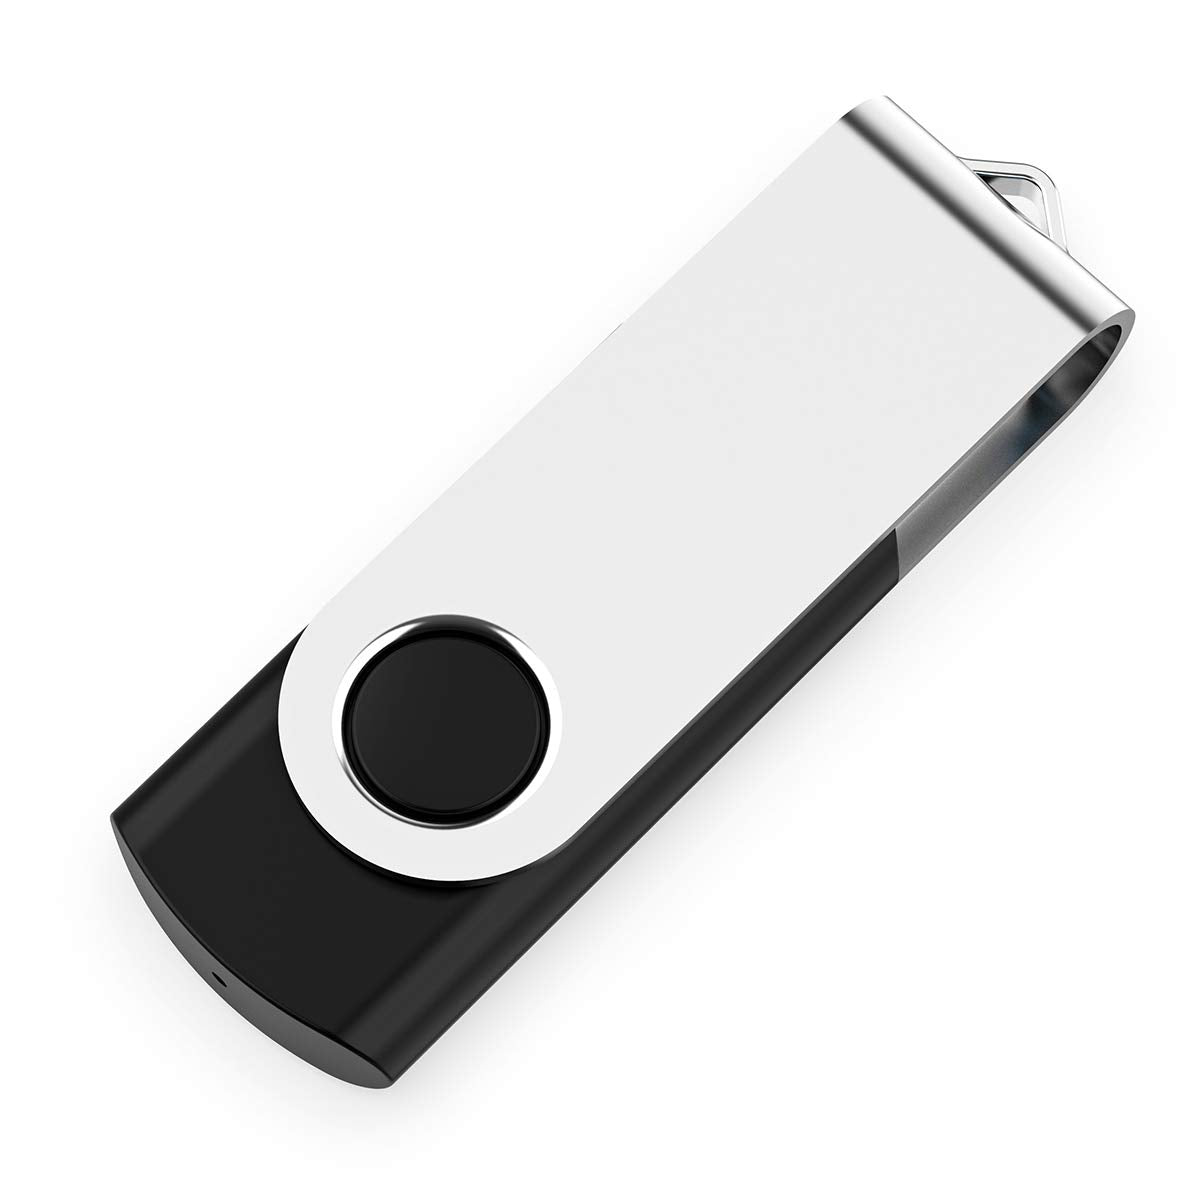 2 Pack 64GB USB Flash Drive USB 2.0 Thumb Drives Jump Drive Fold Storage Memory Stick Swivel Design - Black